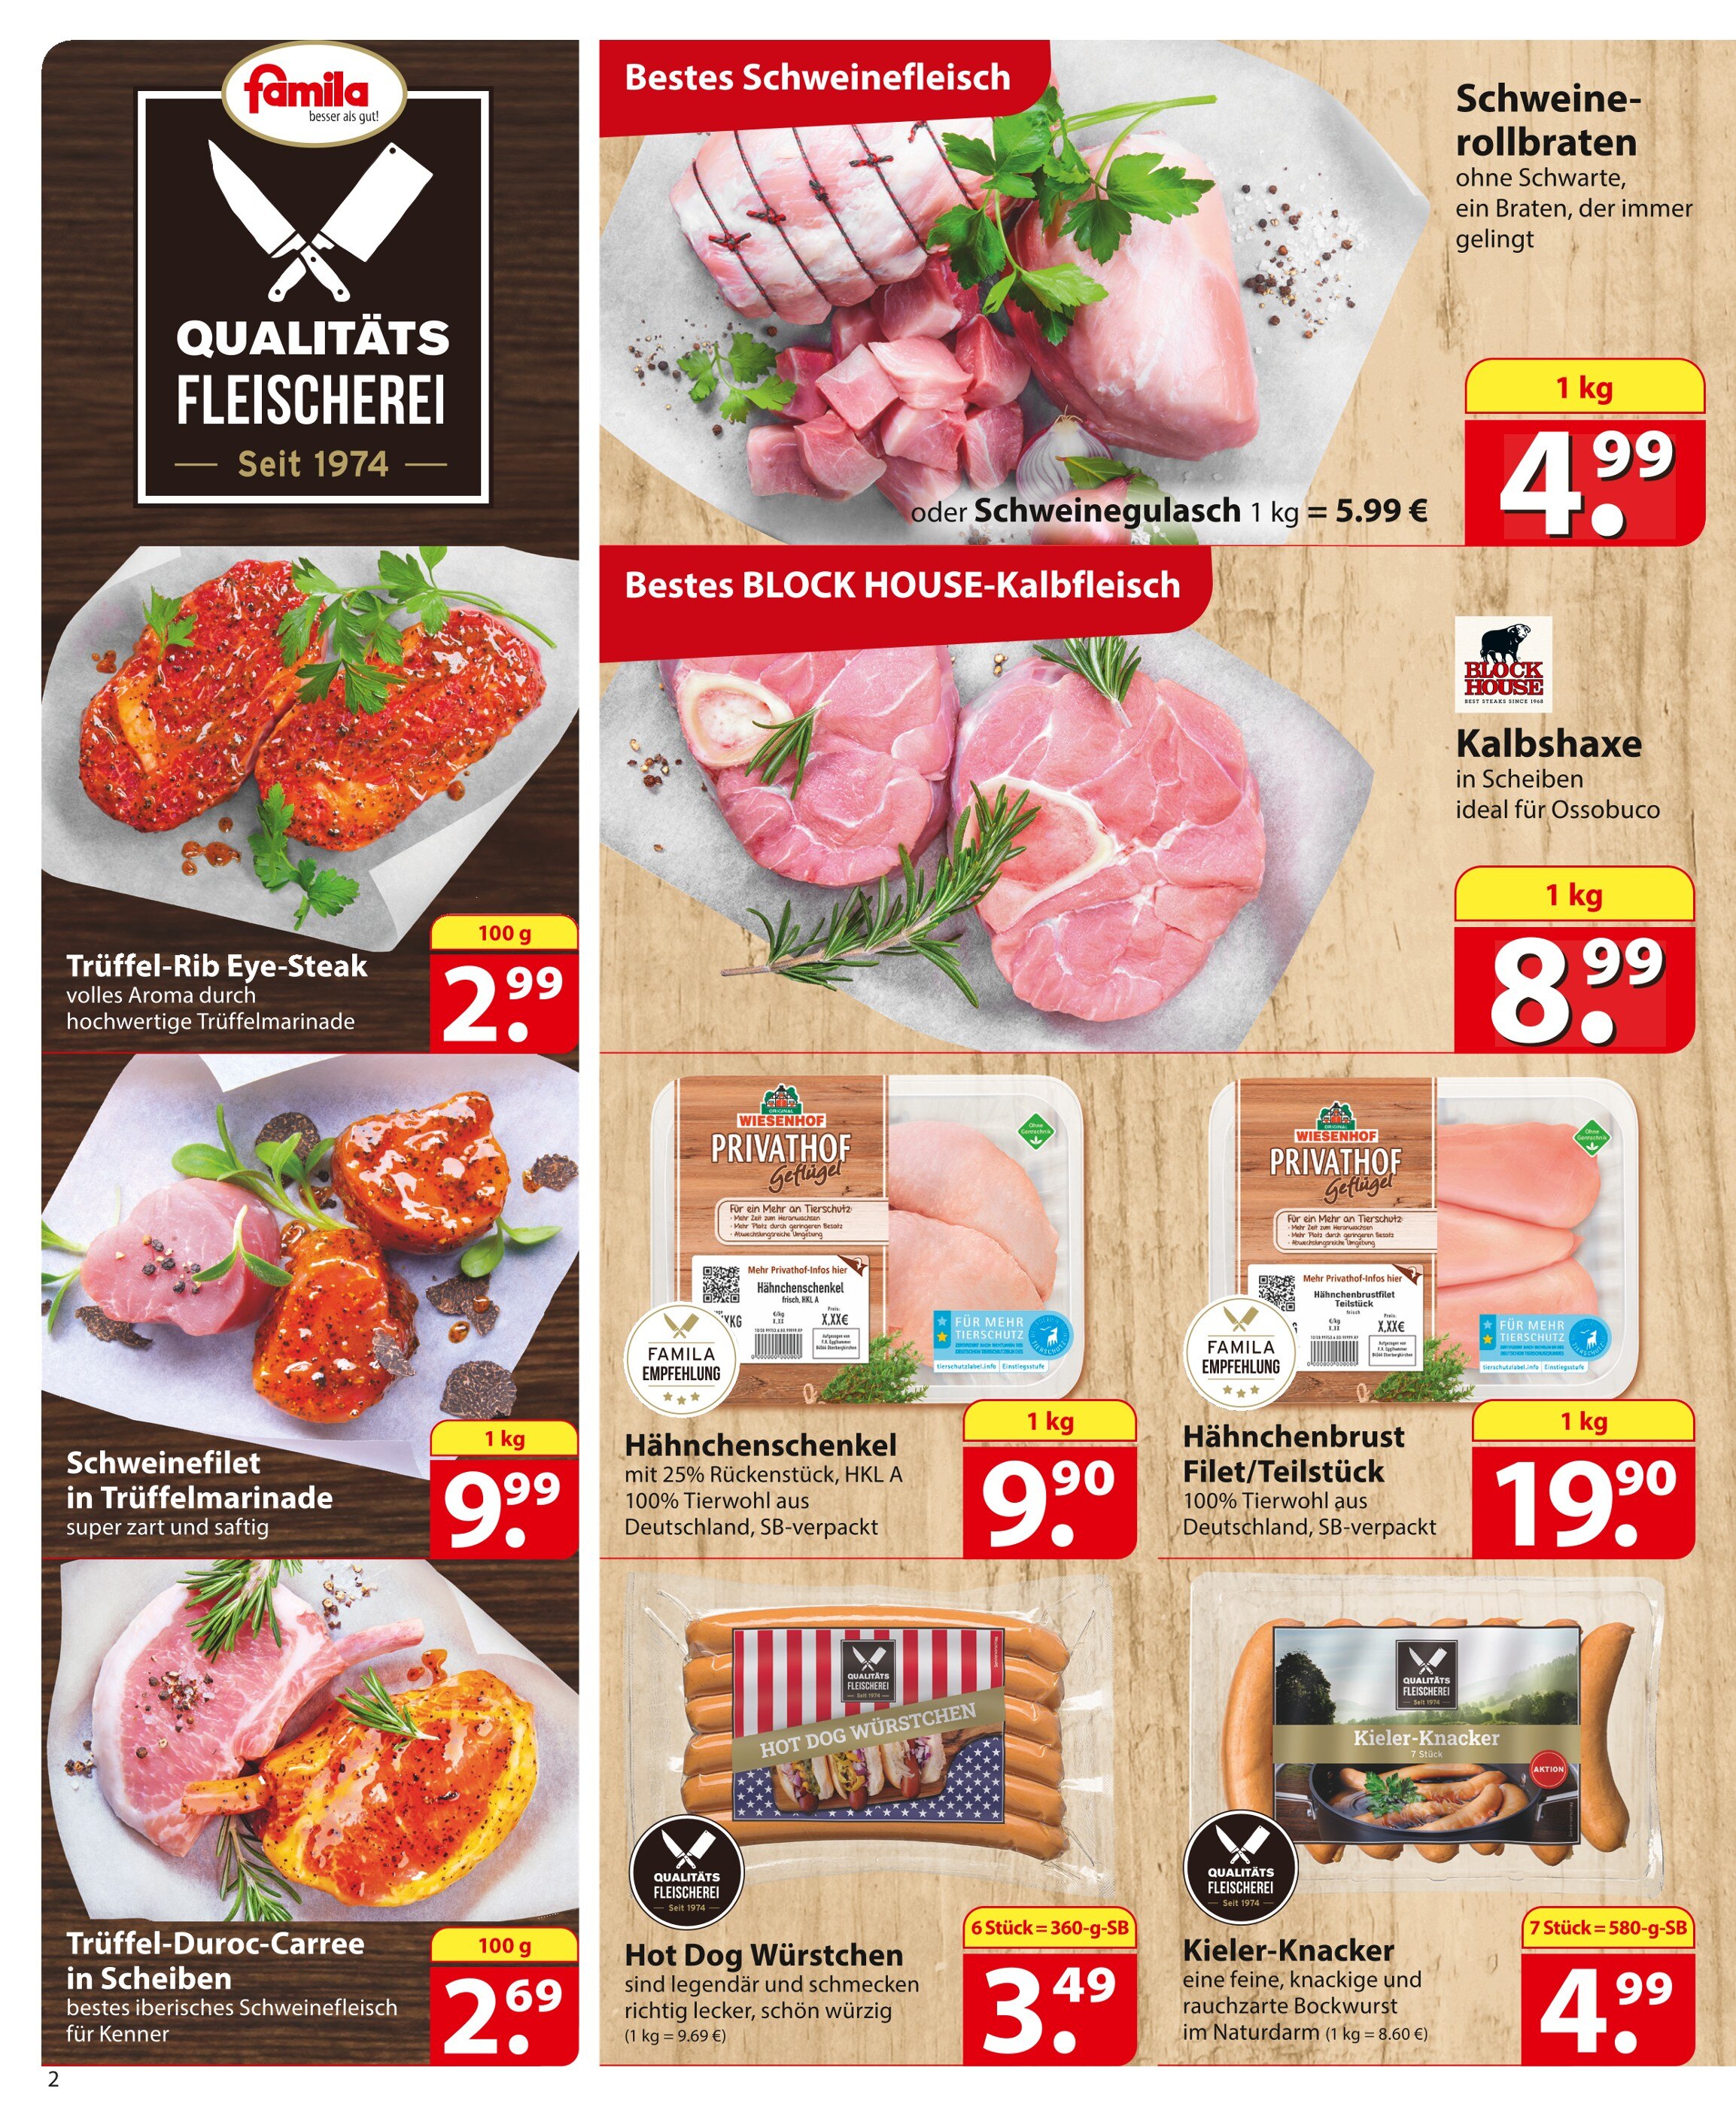 Steak kaufen in Langenhagen günstige in Langenhagen - Angebote